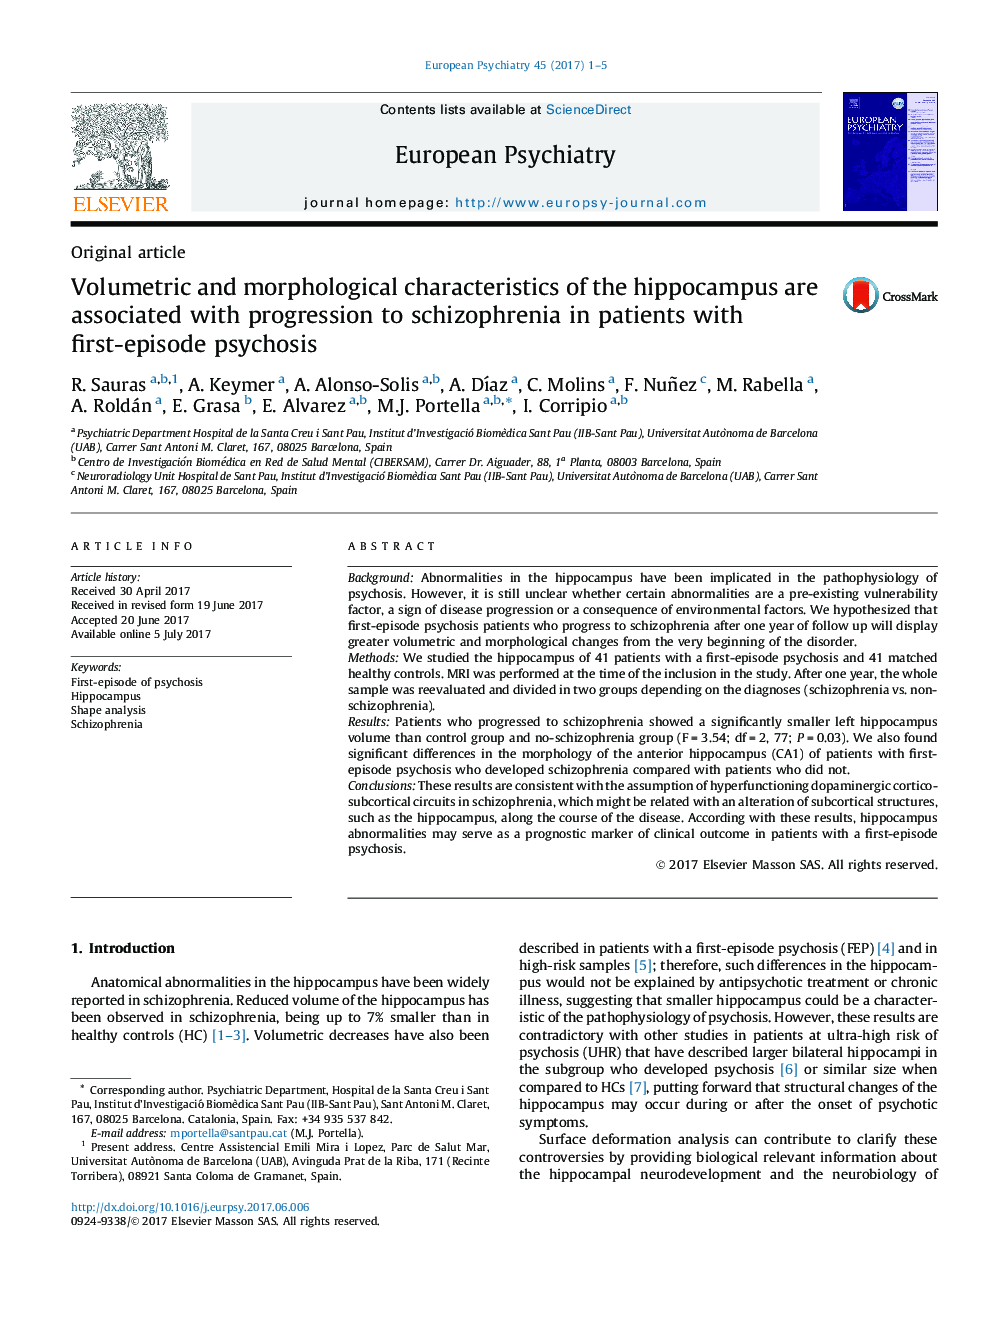 اصل مقاله اندازه و ویژگی های مورفولوژیکی هیپوکامپ همراه با پیشرفت اسکیزوفرنی در بیماران مبتلا به روانپریشی اول 